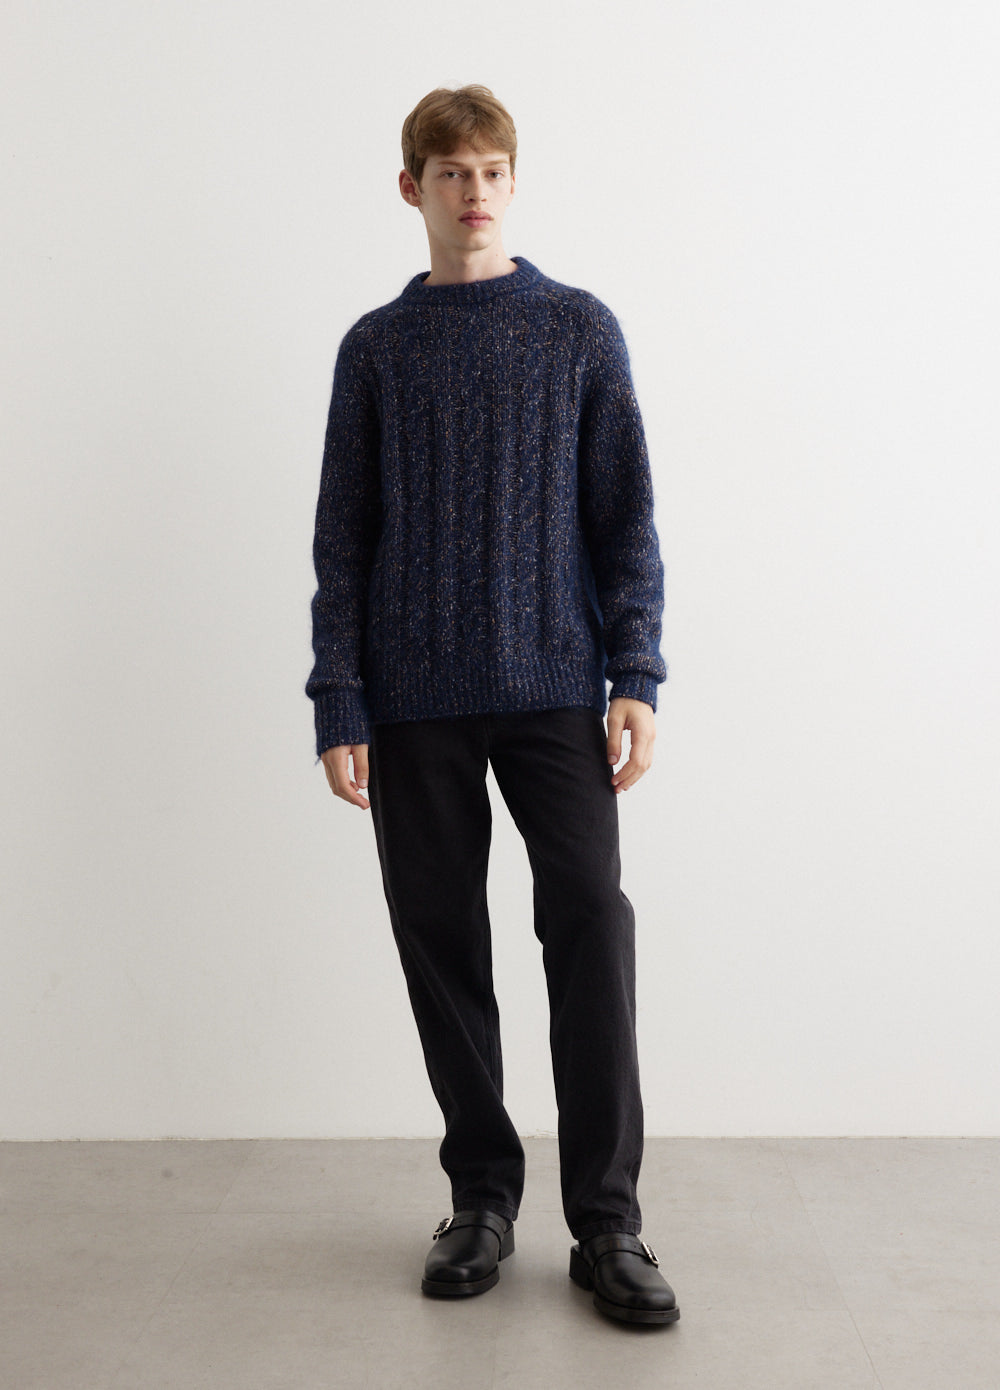 Ivar Cotton Alpaca Cable Sweater